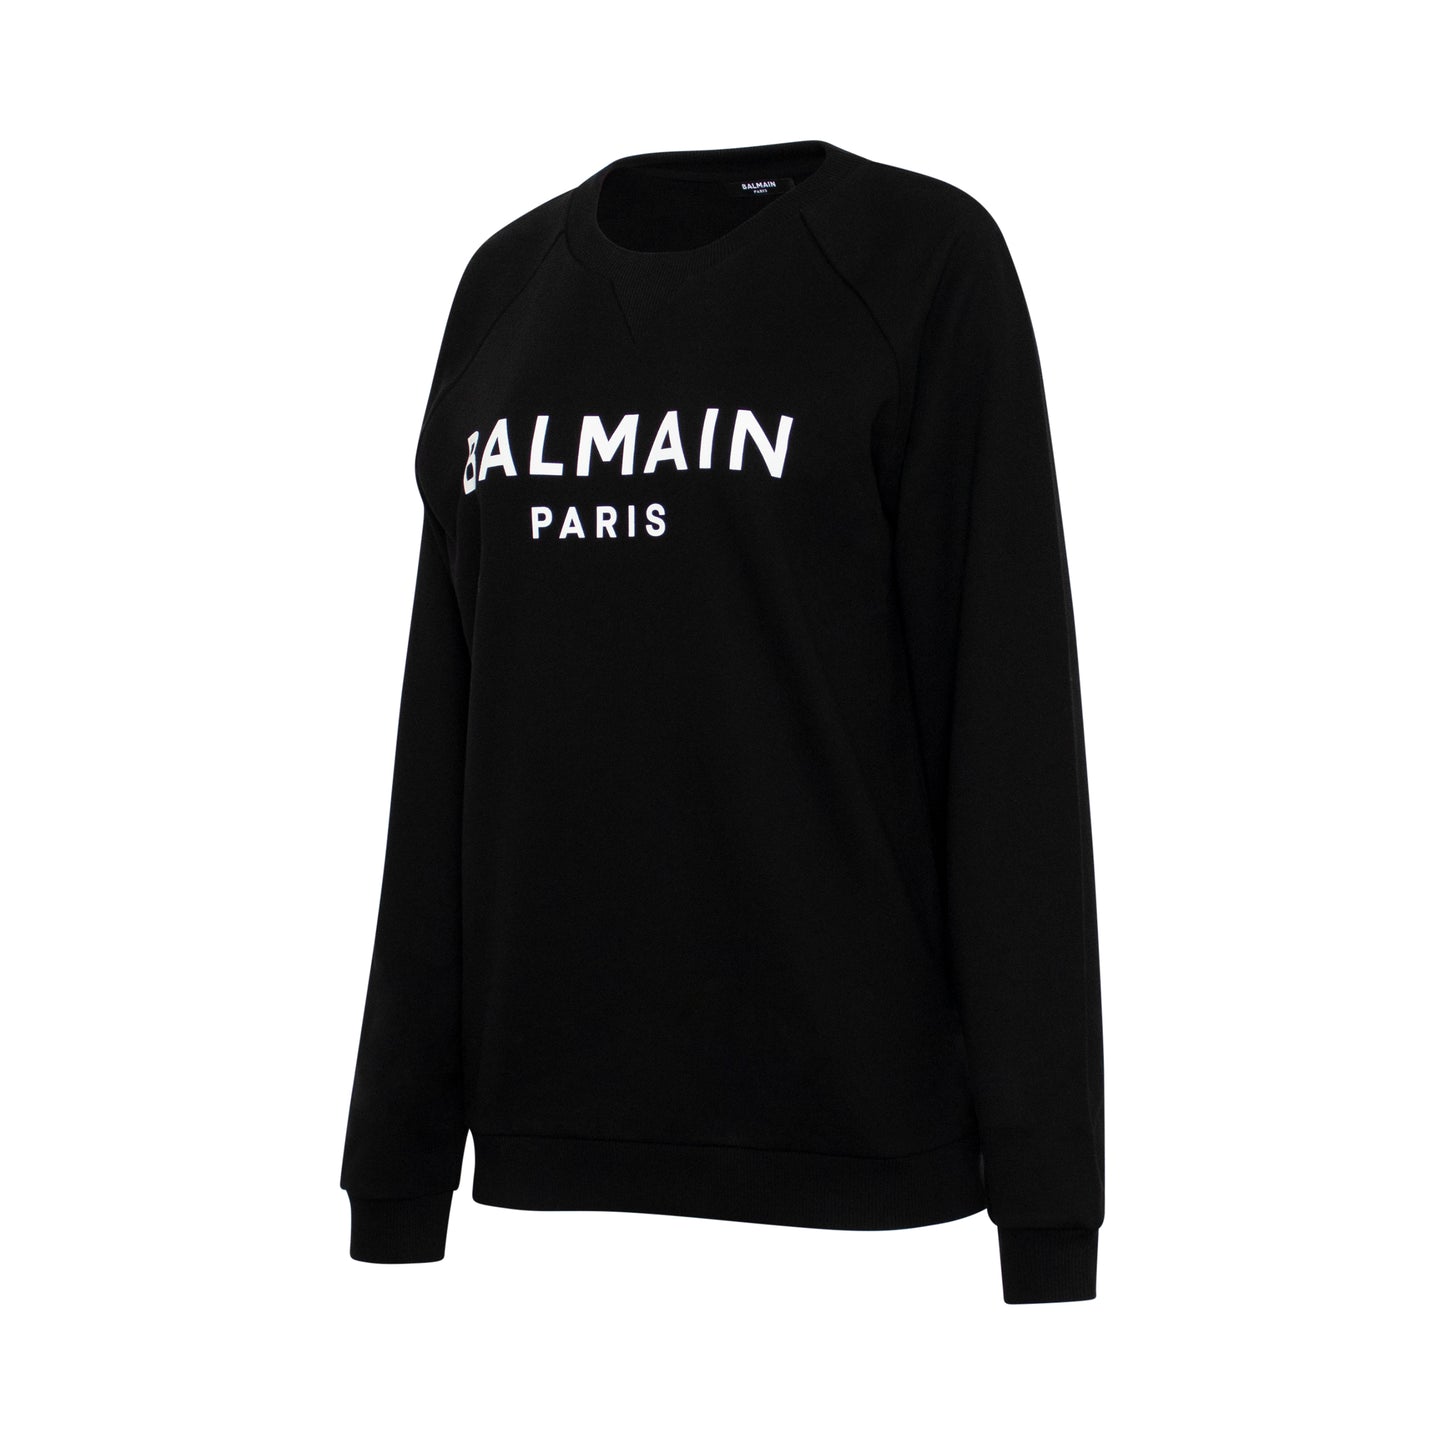 Balmain Printed Logo Sweatshirts in Black/White